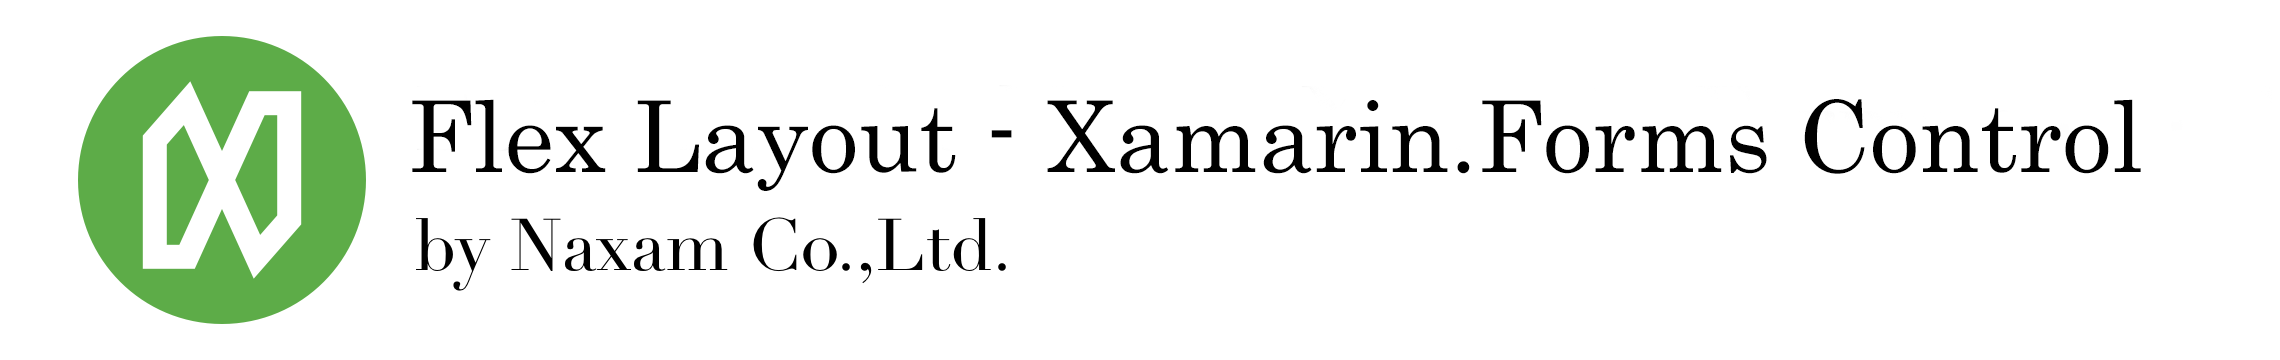 Flex Layout - A Xamarin.Forms control